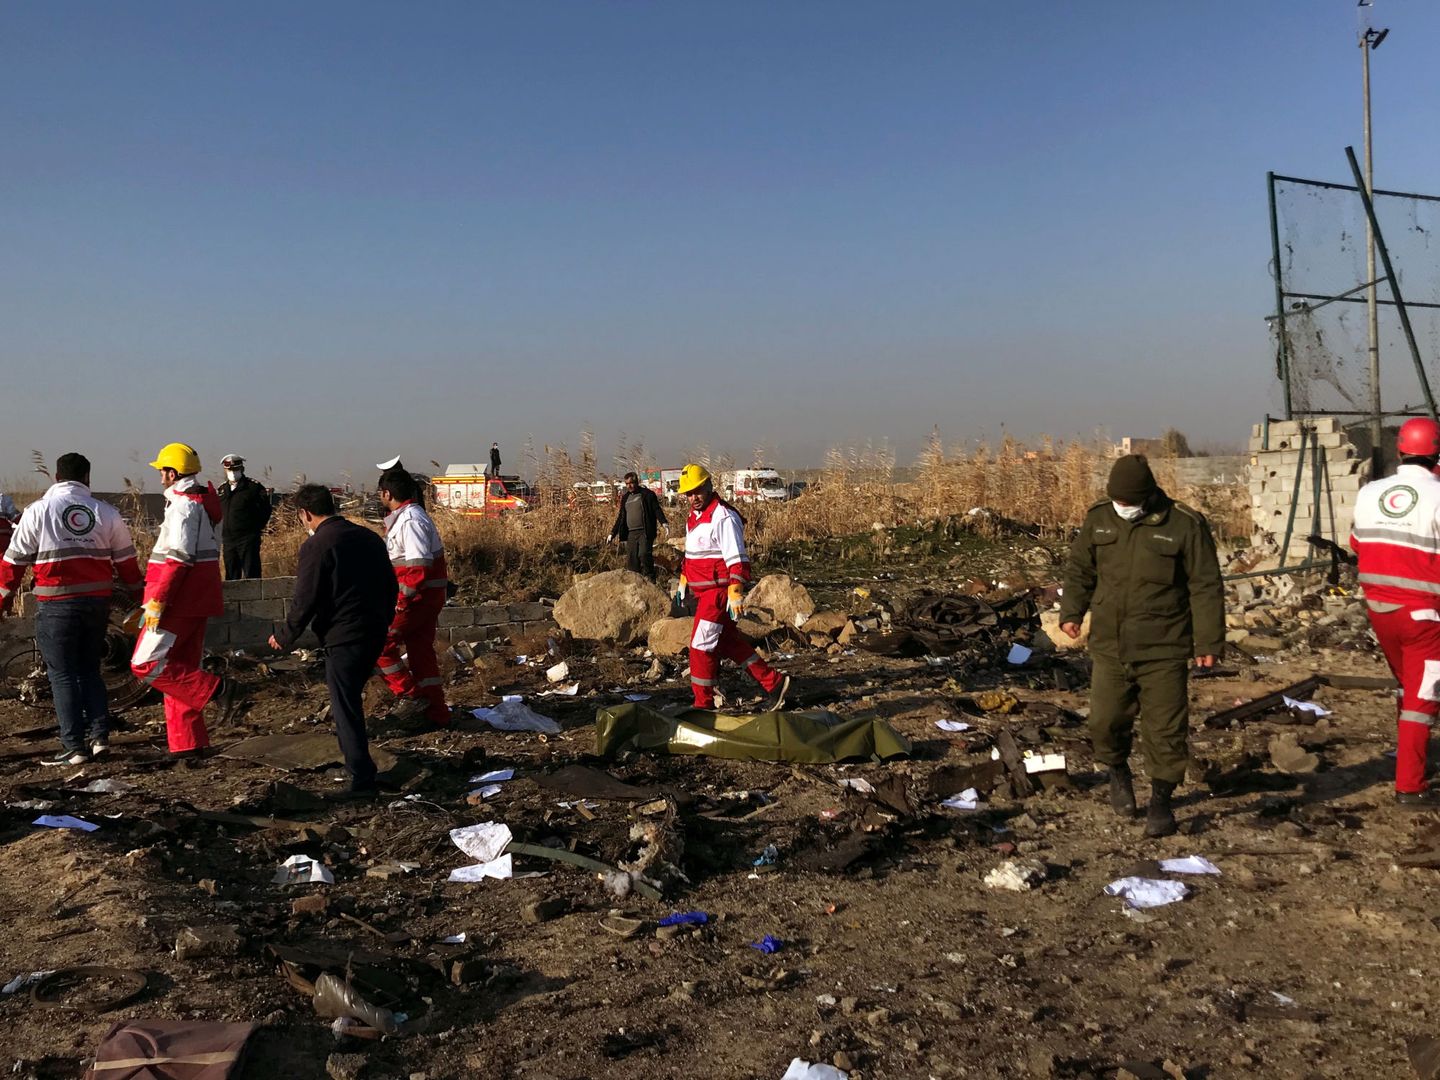 El equipo de rescate revisa los escombros del accidente (Reuters)